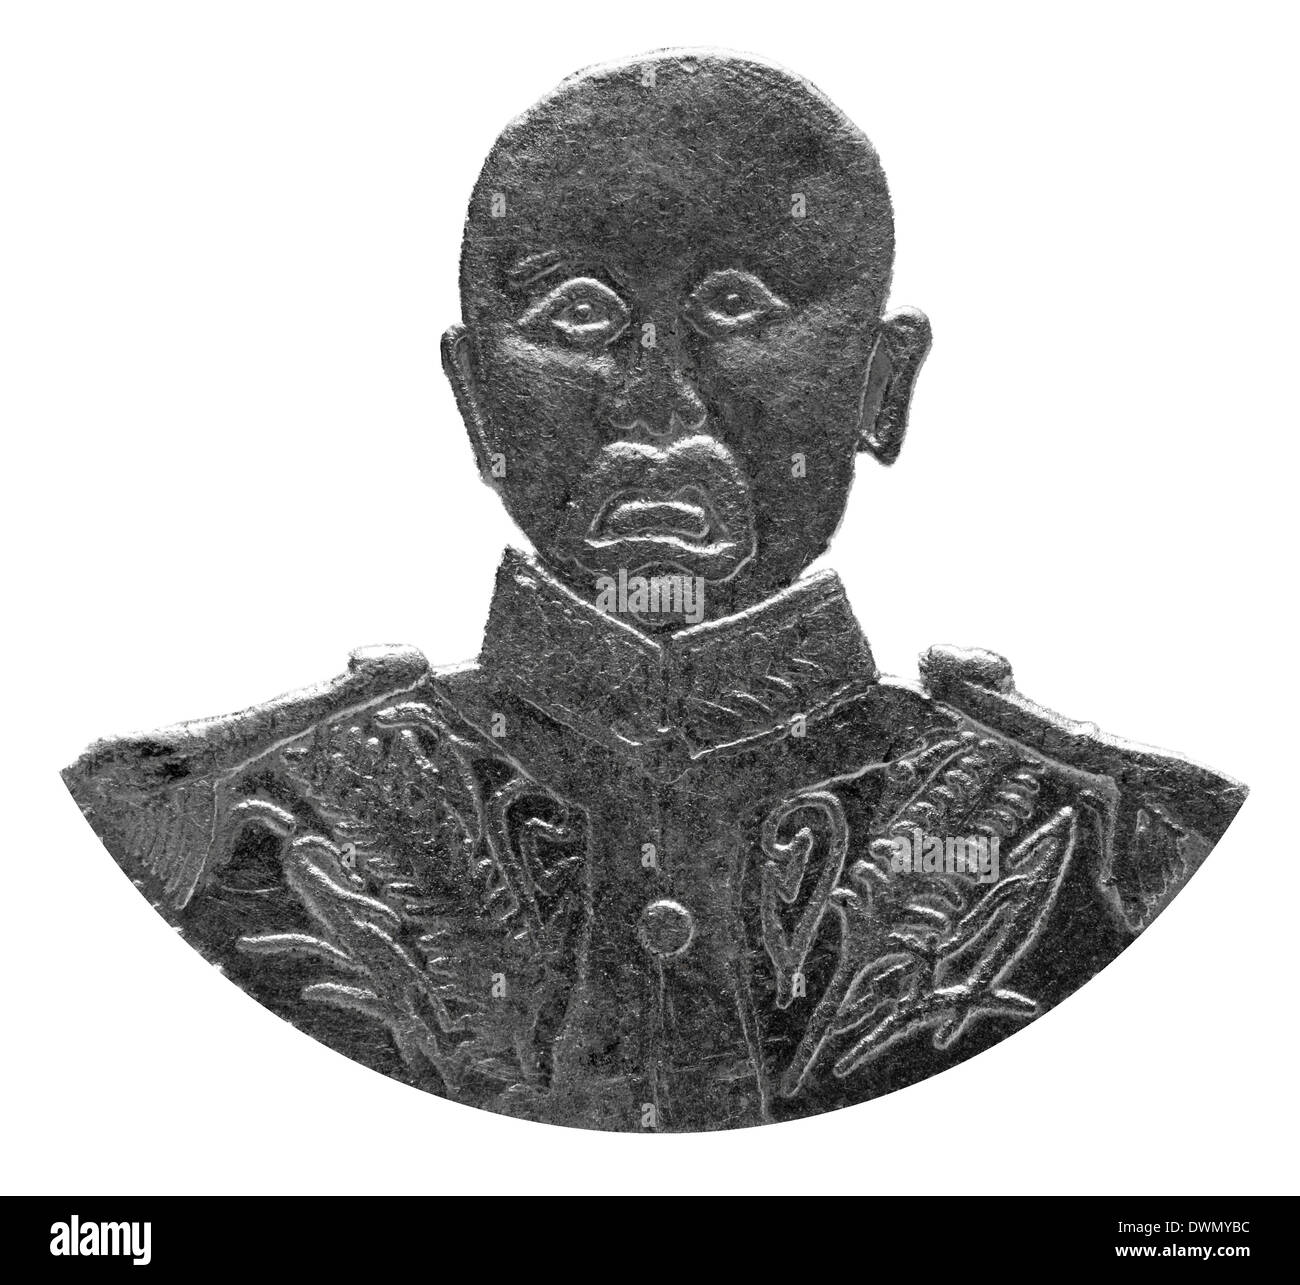 Portrait de Zhang Zuolin, à partir de 1 pièce d'un dollar, la Chine, années 20, sur fond blanc Banque D'Images